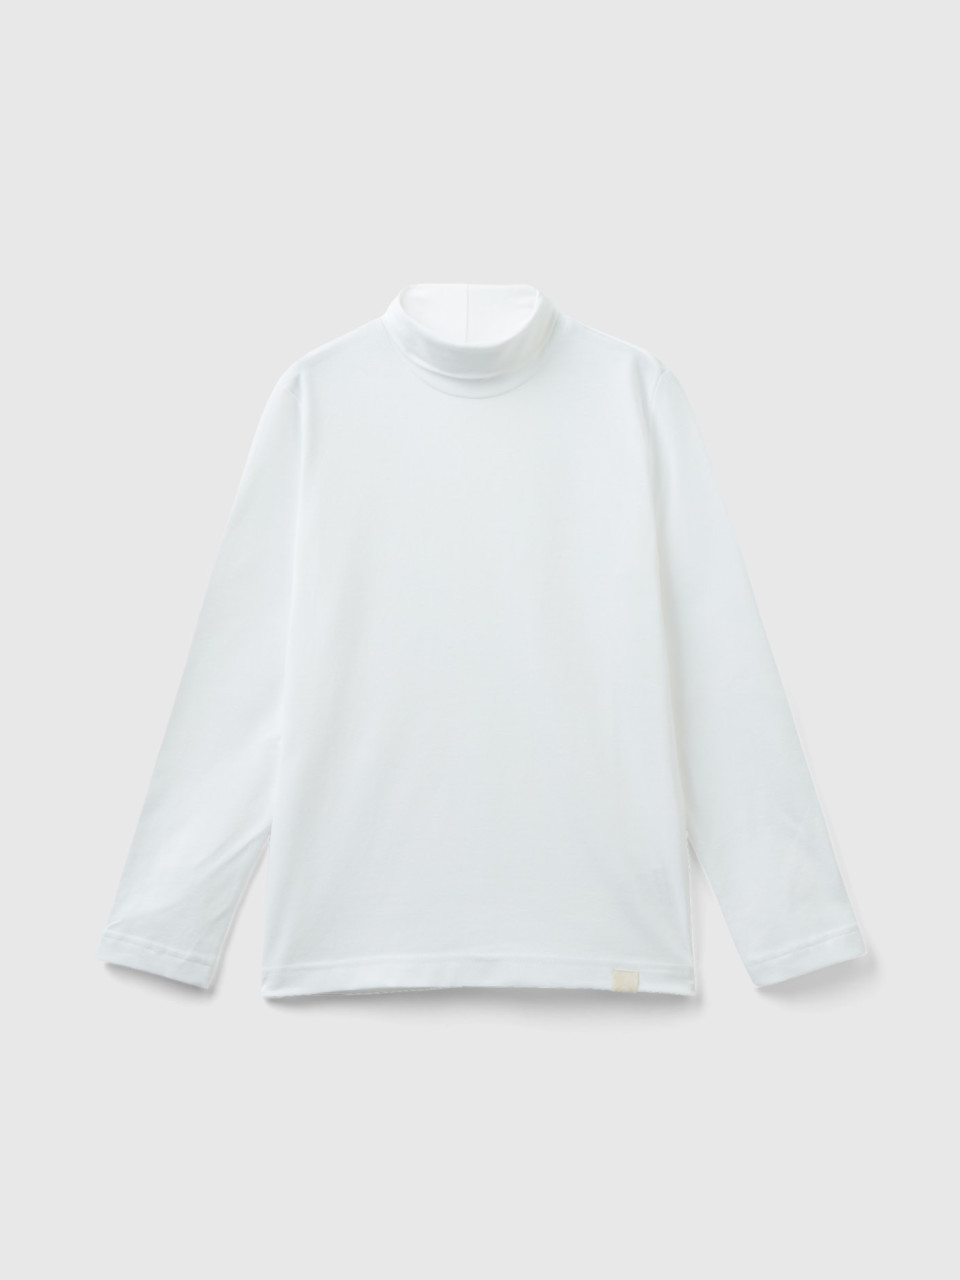 Benetton, Long Sleeve Turtleneck T-shirt, White, Kids